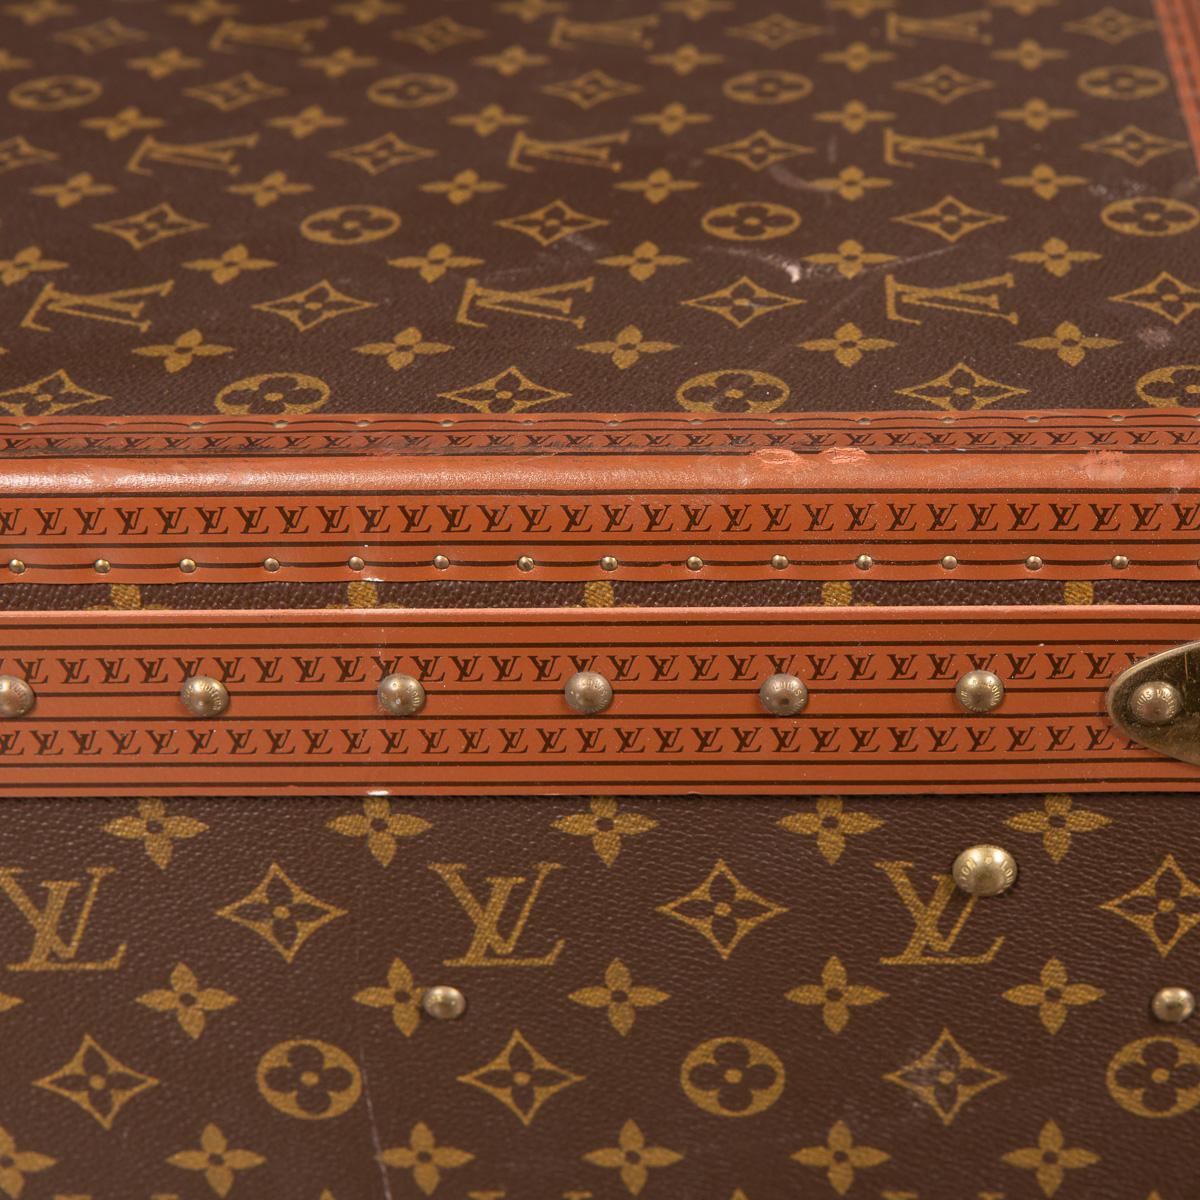 Louis Vuitton in Monogram Canvas Suitcase, Paris, circa 1970 12